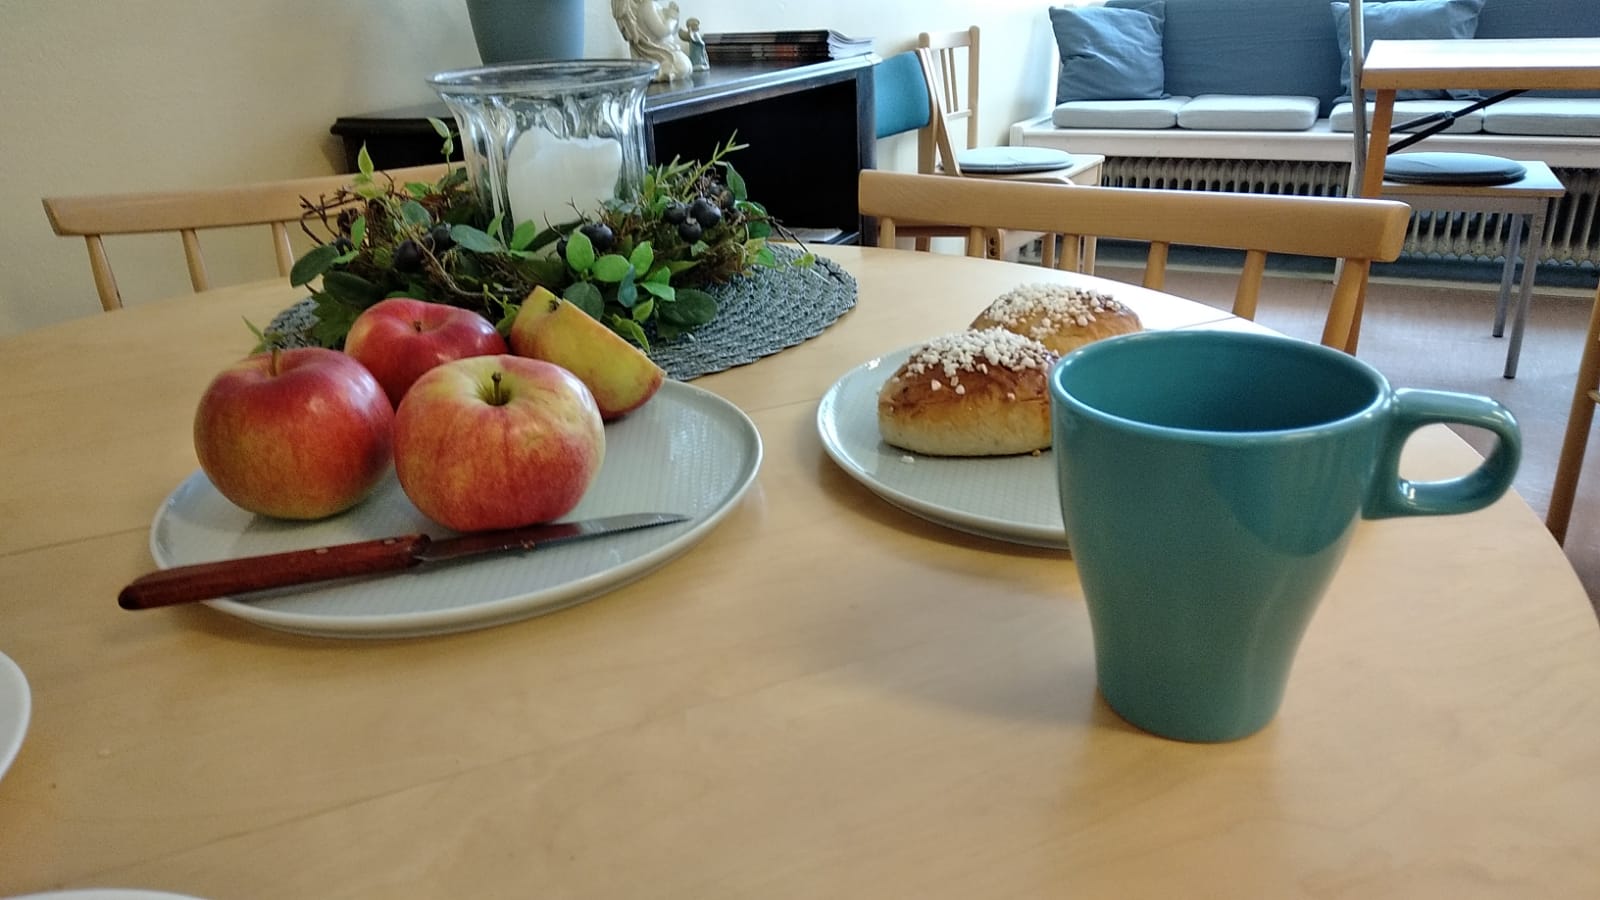 En bild från Gemenskapens vardagsrum, äpplen, kaffe och bulle på bordet.